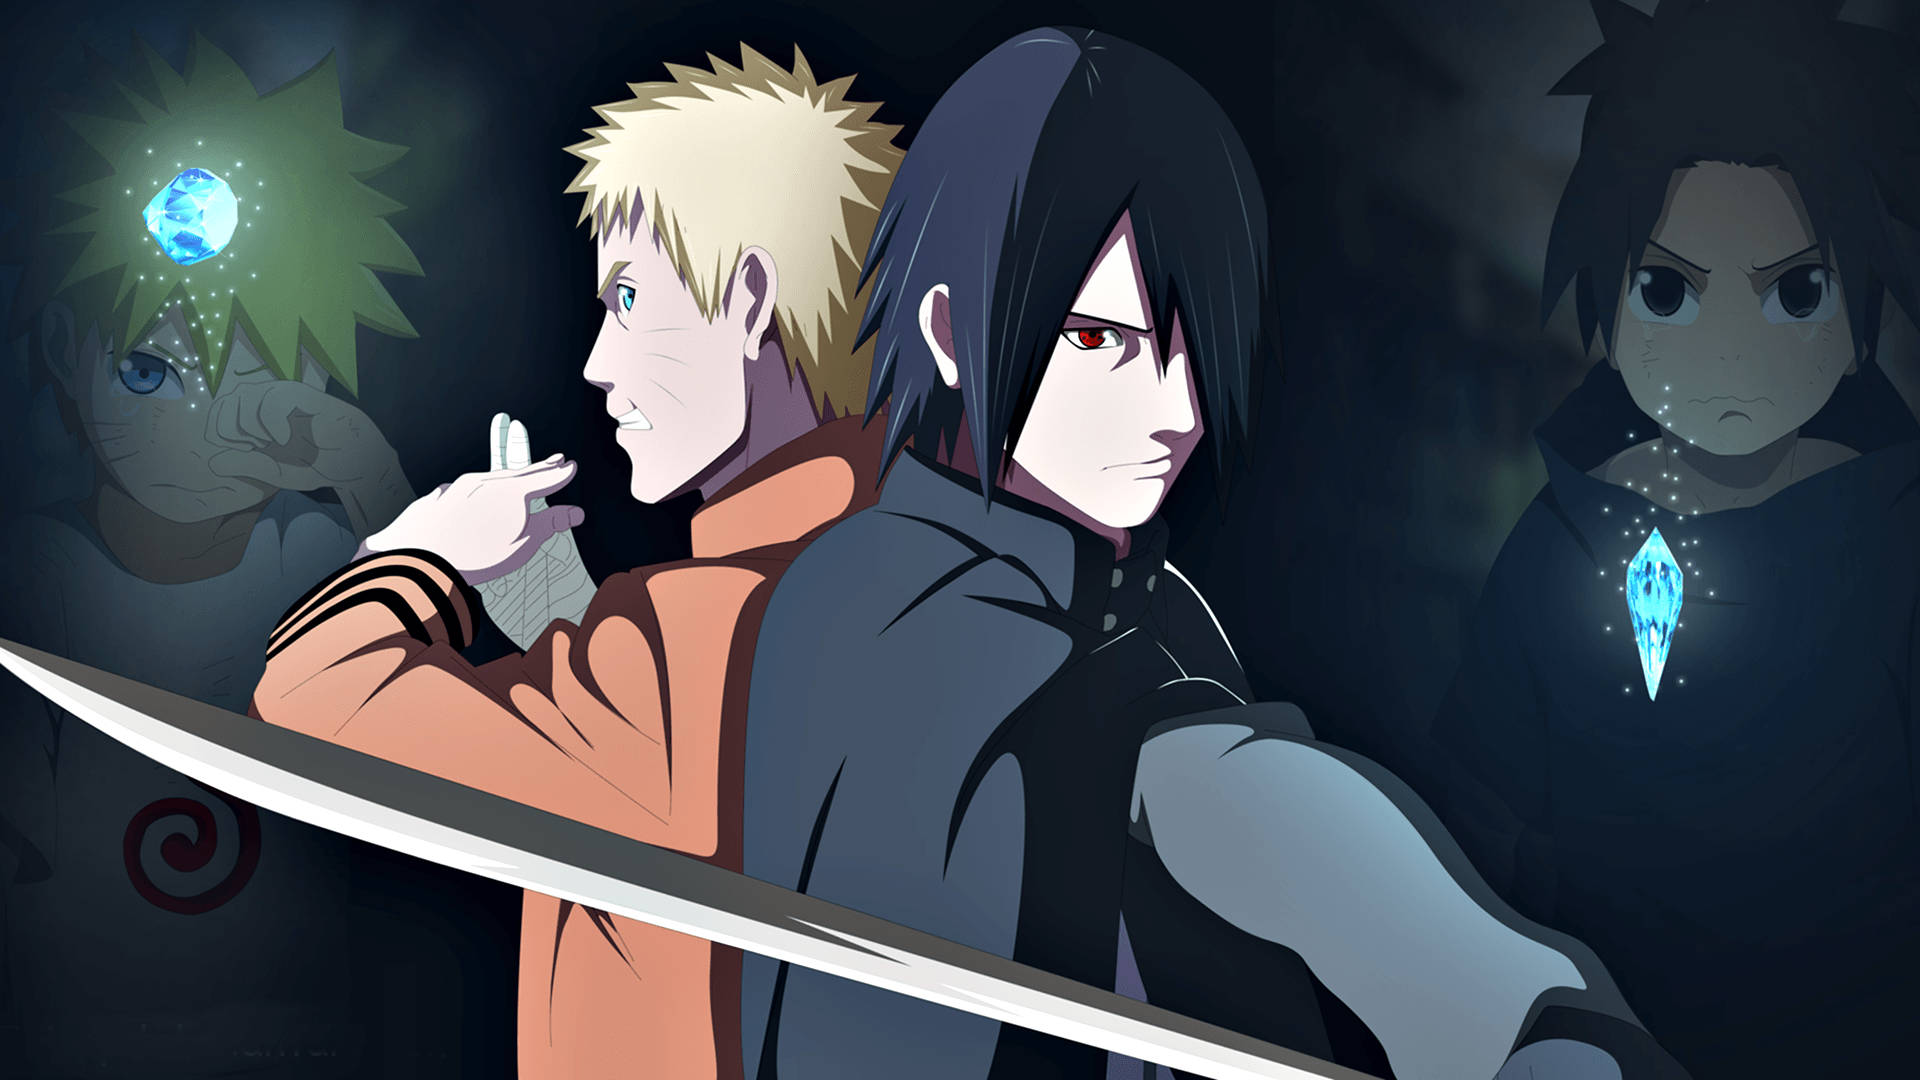 Anime Naruto And Sasuke Fighting Together